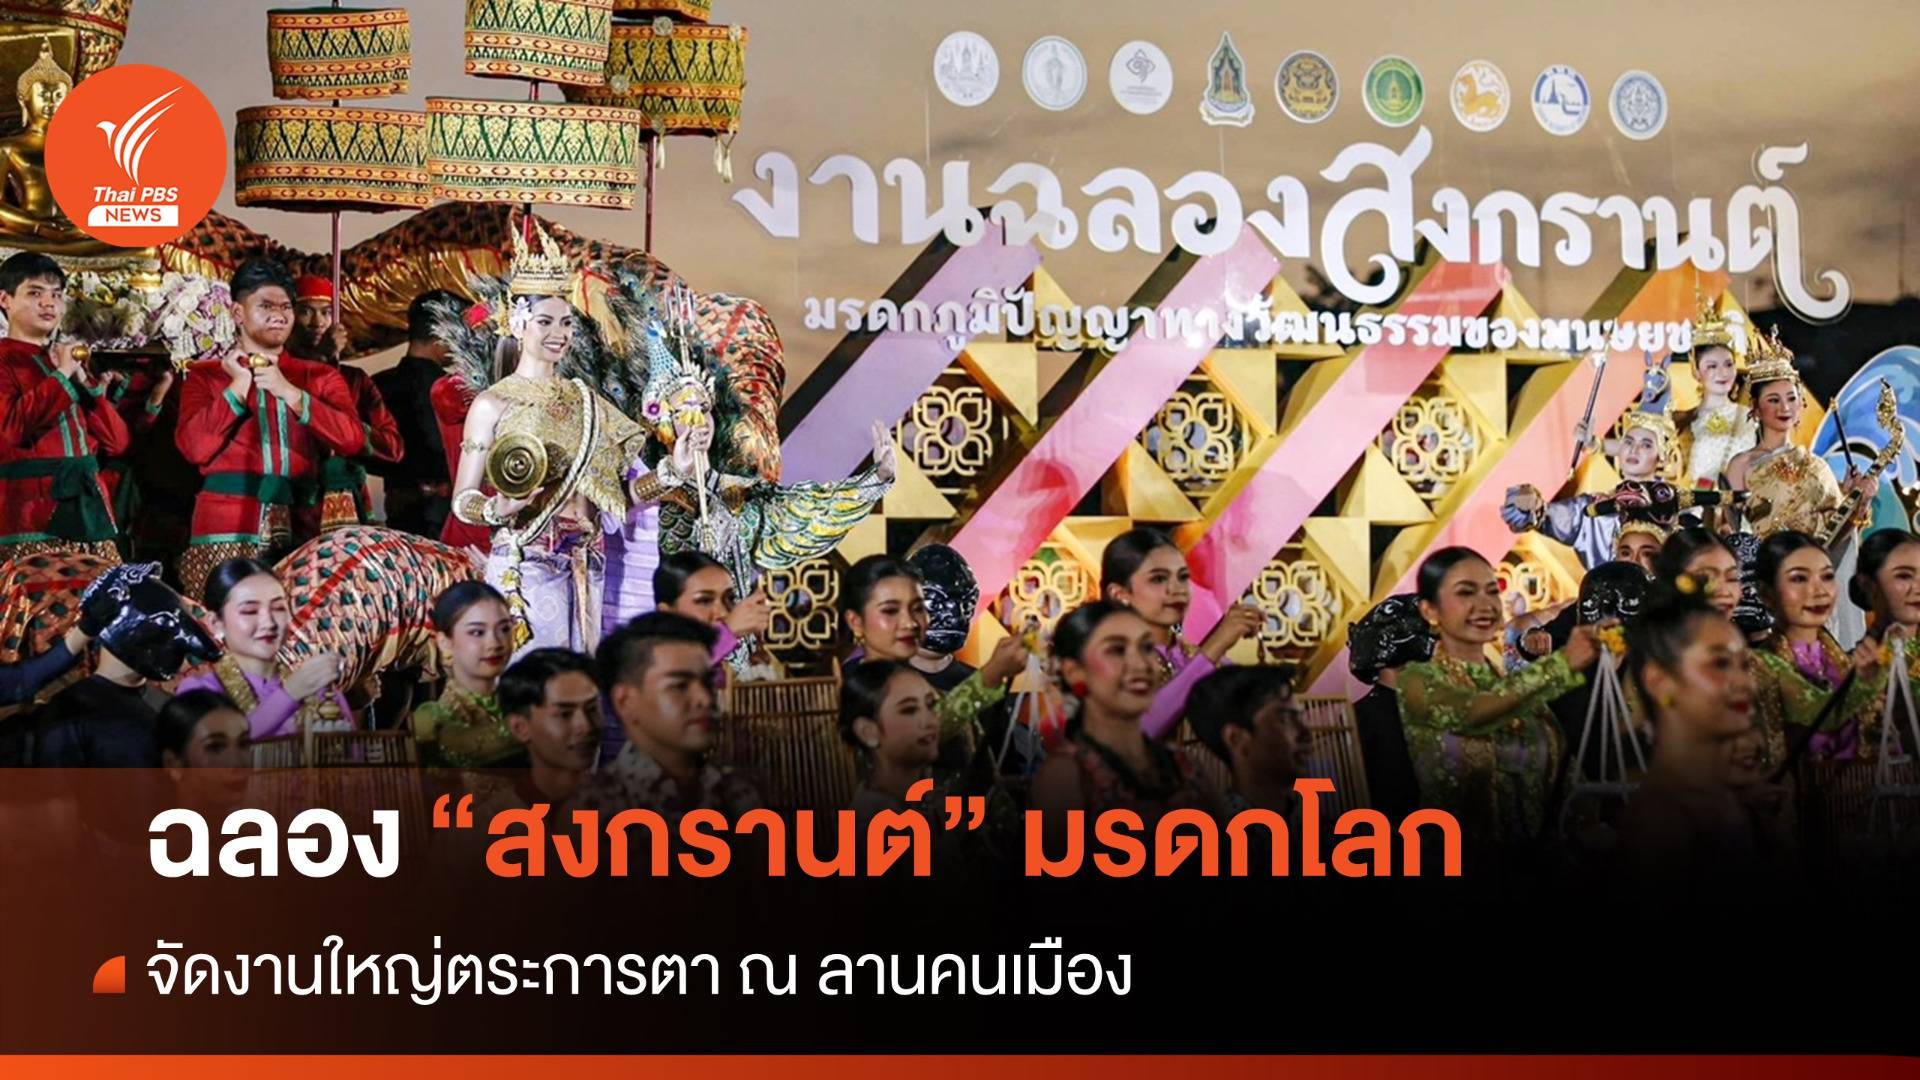 ตระการตาลานคนเมืองฉลอง "สงกรานต์ไทย" มรดกโลก